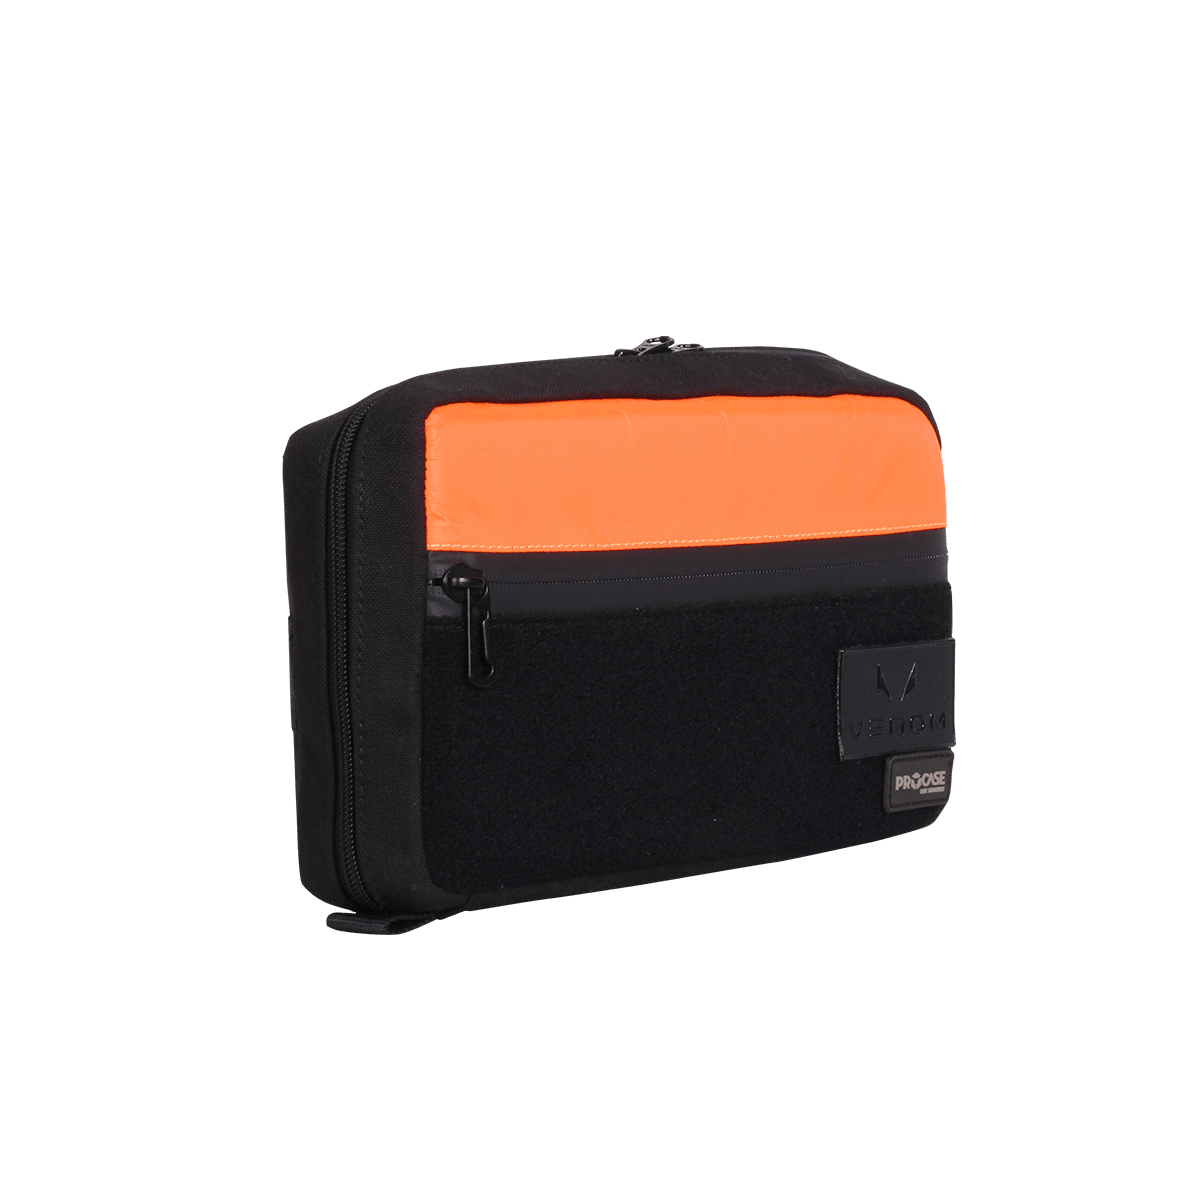 Wireless Handbag - Medical